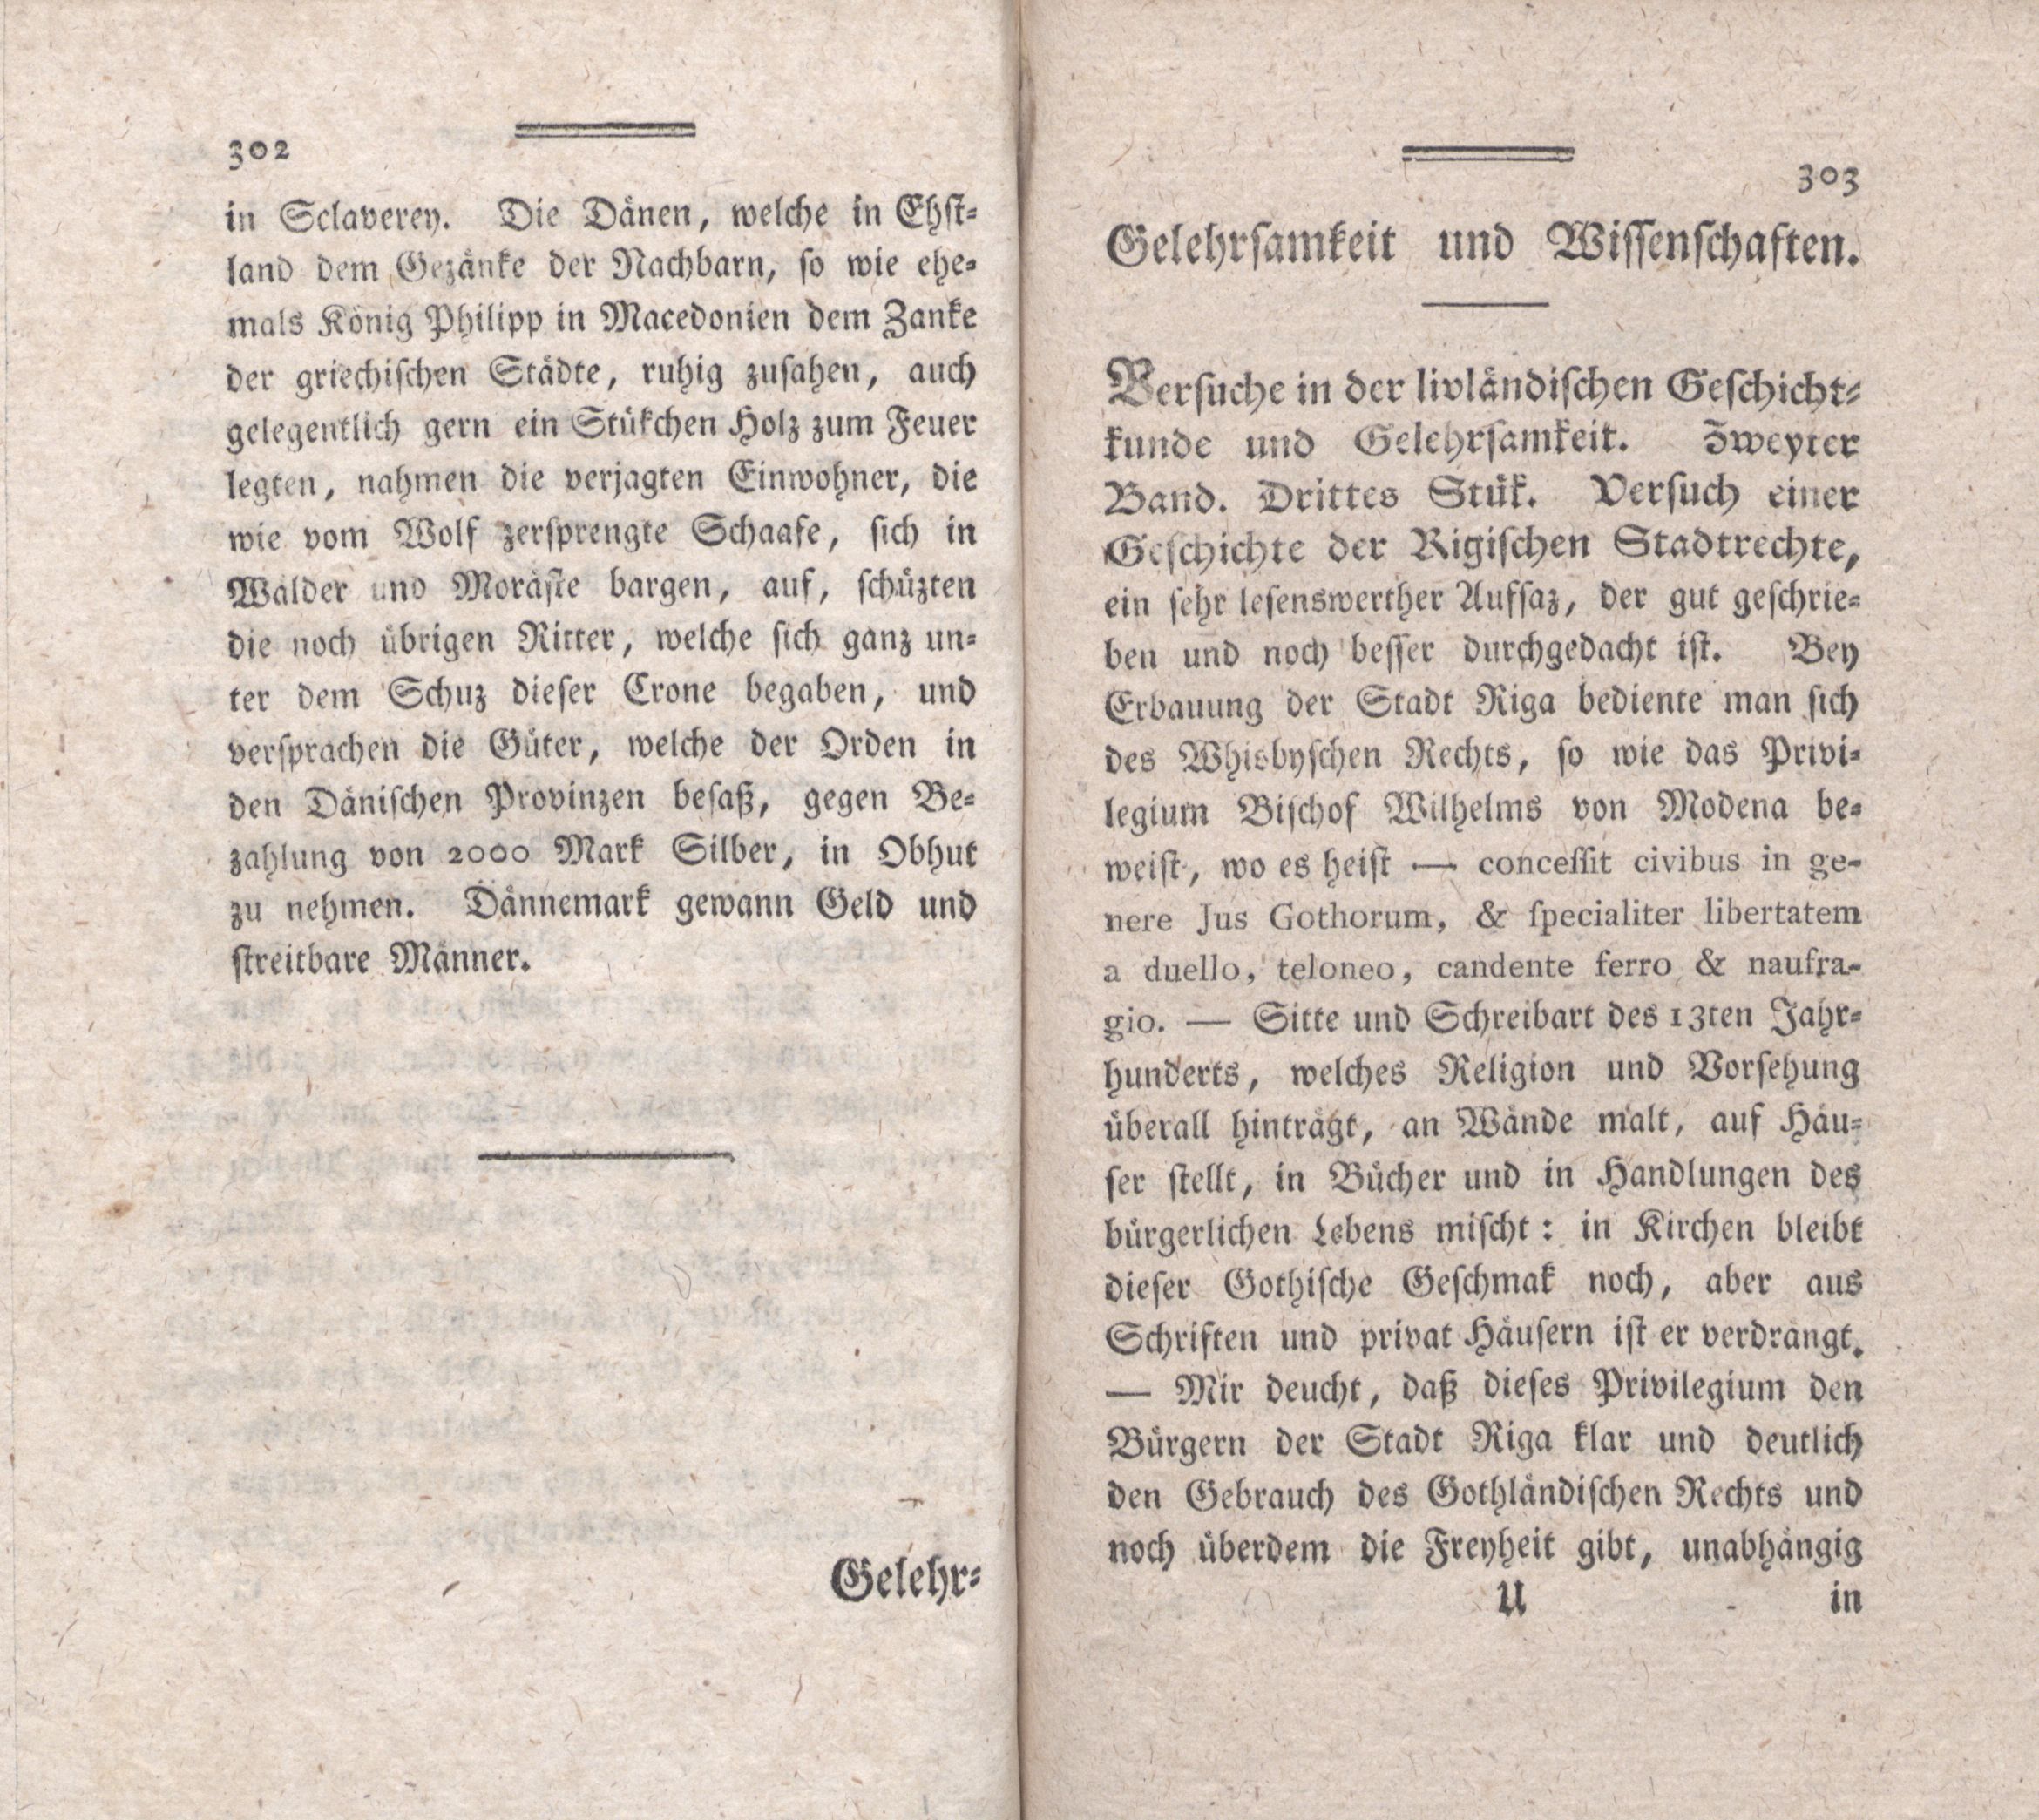 Gelehrsamkeit und Wissenschaften [4] (1787) | 1. (302-303) Haupttext